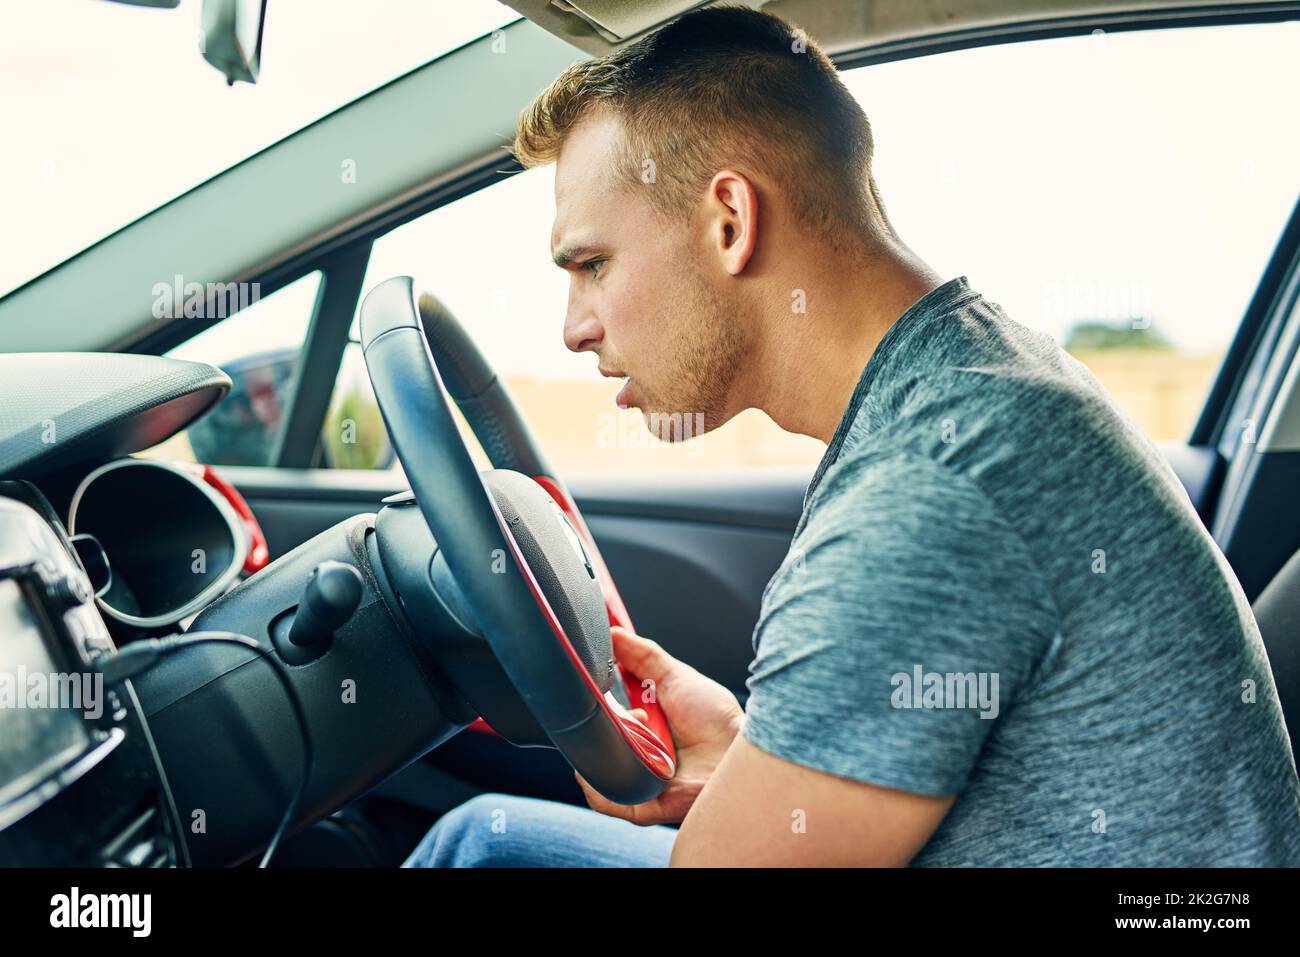 Was macht diesen lustigen Sound. Aufnahme eines jungen Mannes, der während der Fahrt Probleme mit seinem Auto hatte. Stockfoto